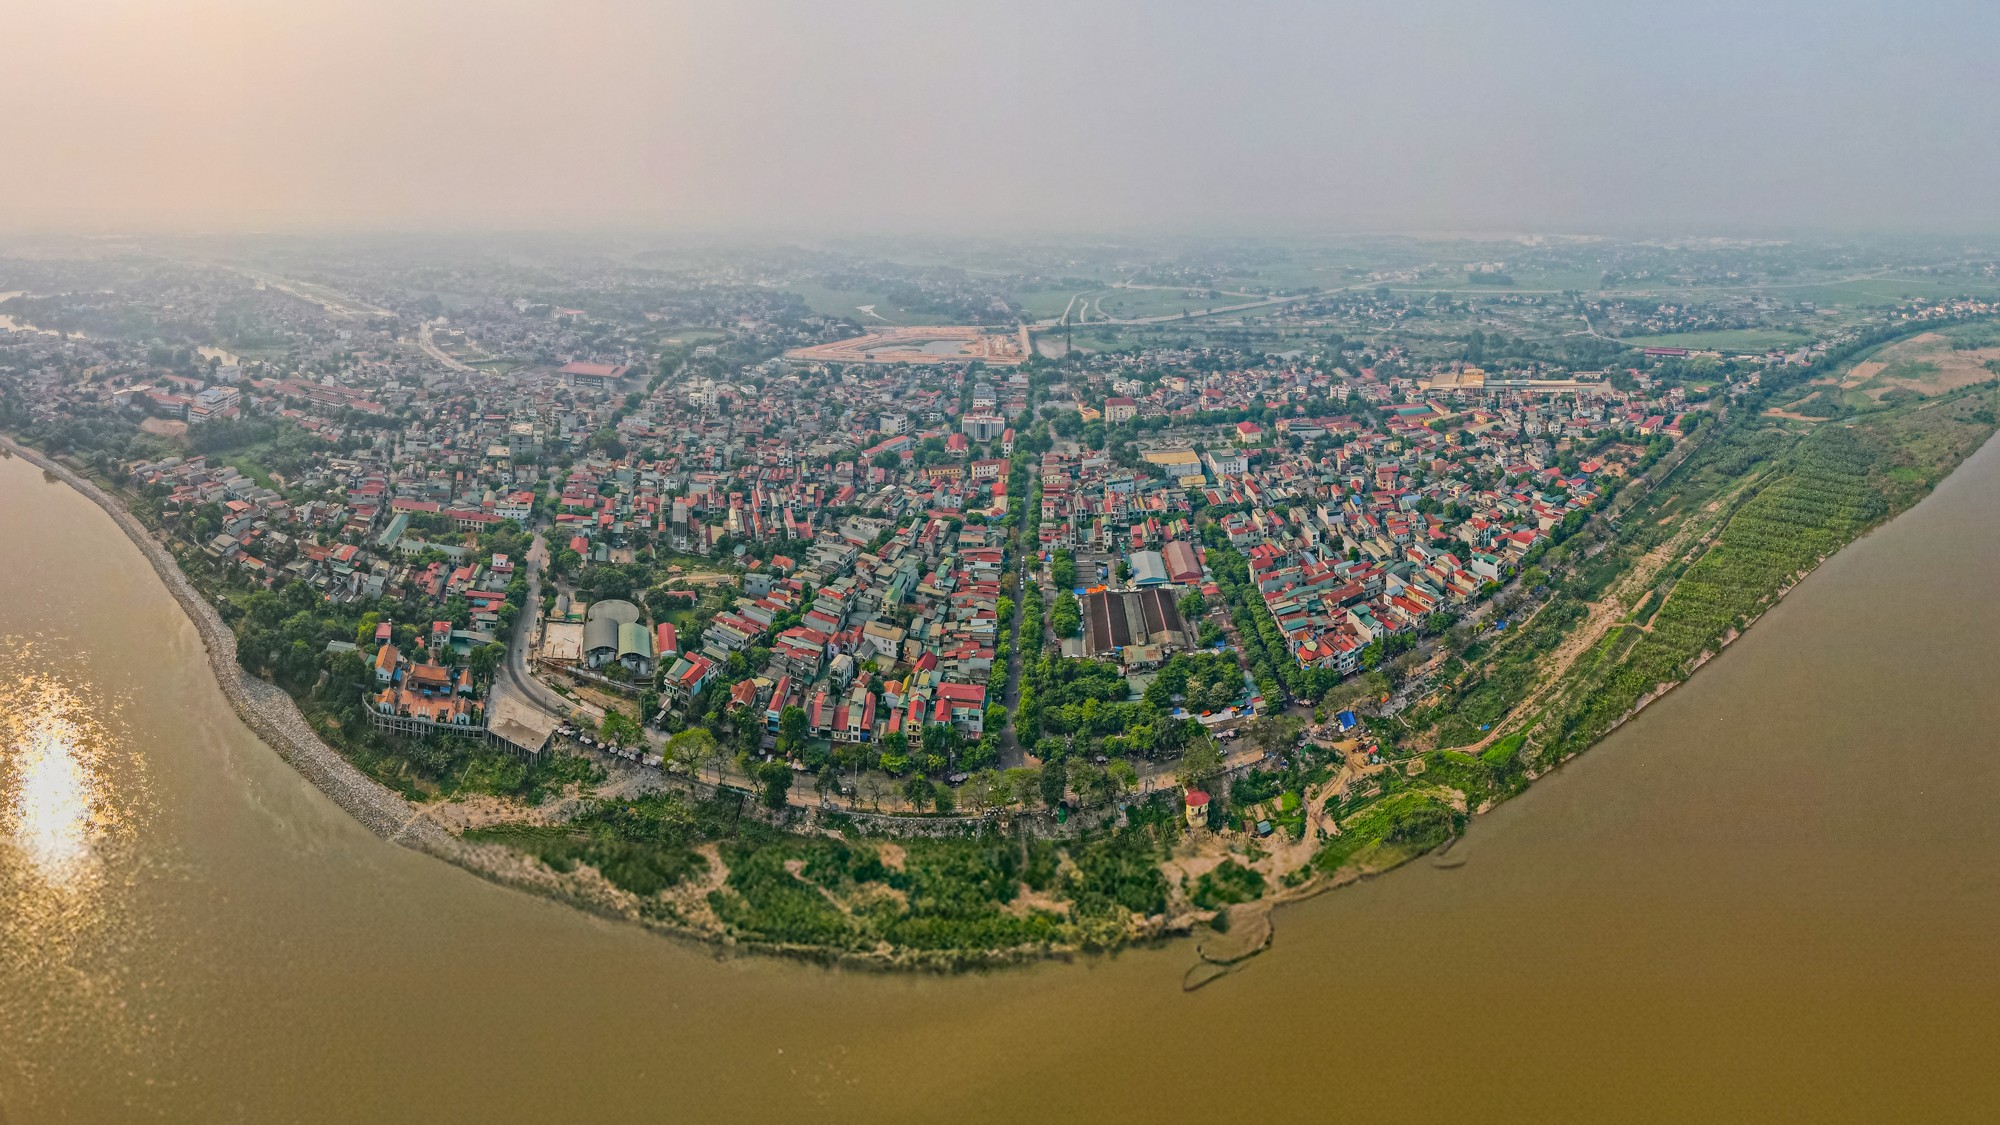 Thị xã lâu đời nhất Việt Nam là giao điểm của 4 đường cao tốc, có khu công nghiệp rộng gần bằng quận Hoàn Kiếm, sẽ lên thành phố sau vài năm nữa- Ảnh 1.